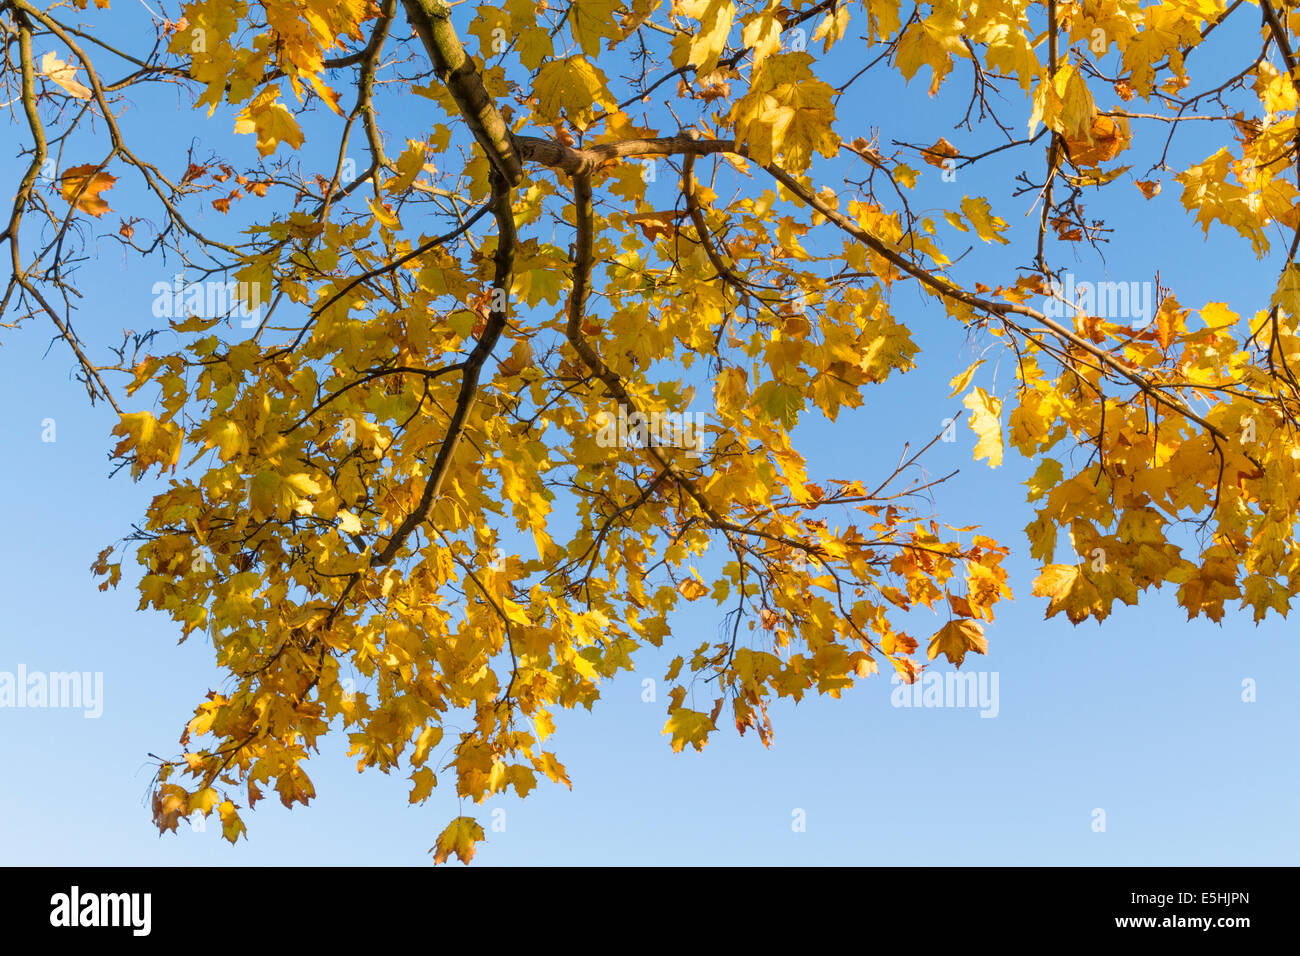 Unter baum laub. Blick auf Herbstlaub auf einem Norwegen Ahorn (Acer negundo) vor blauem Himmel, England, Großbritannien Stockfoto